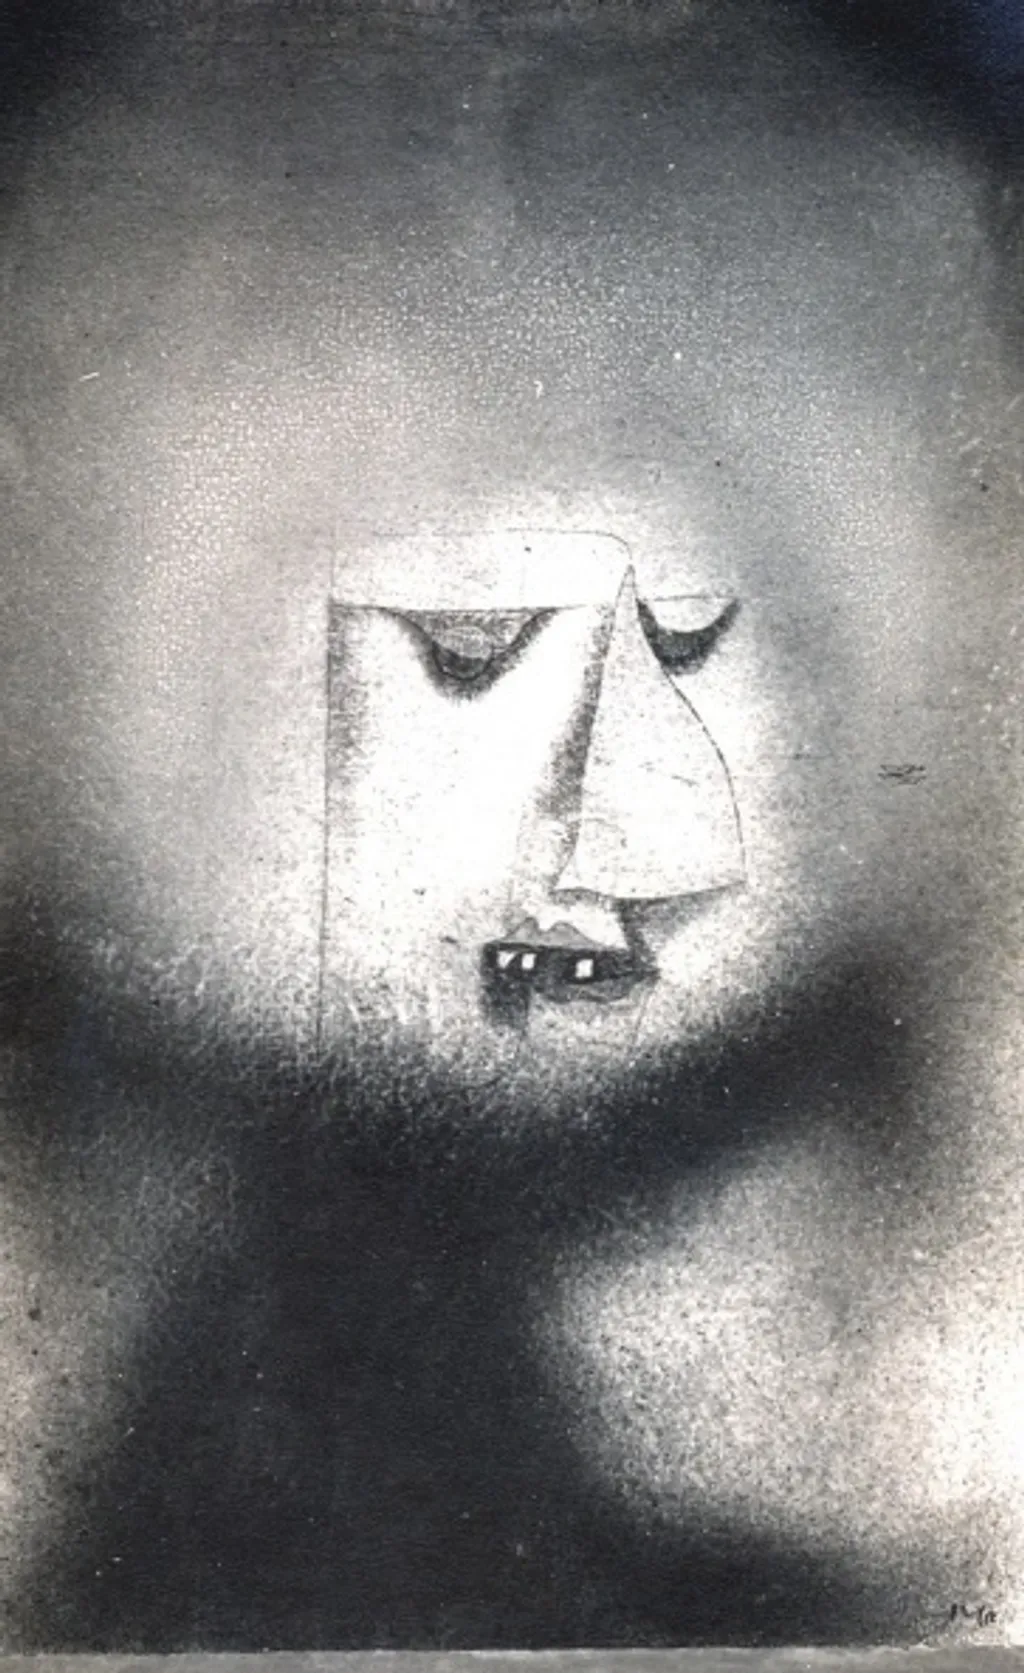 Paul Klee
náci galéria 